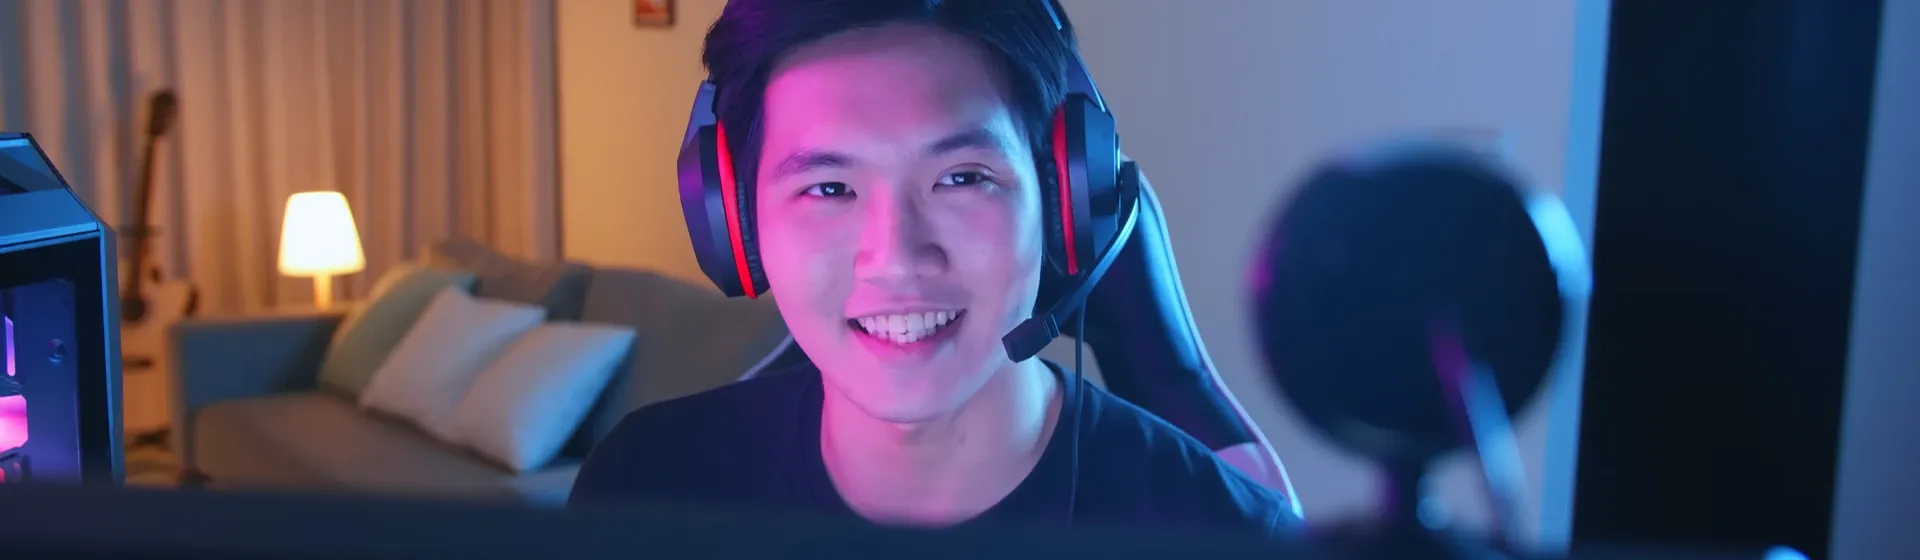 Jovem asiático jogando enquanto usa um headset gamer, com seu setup em sua frente, mas embaçado.